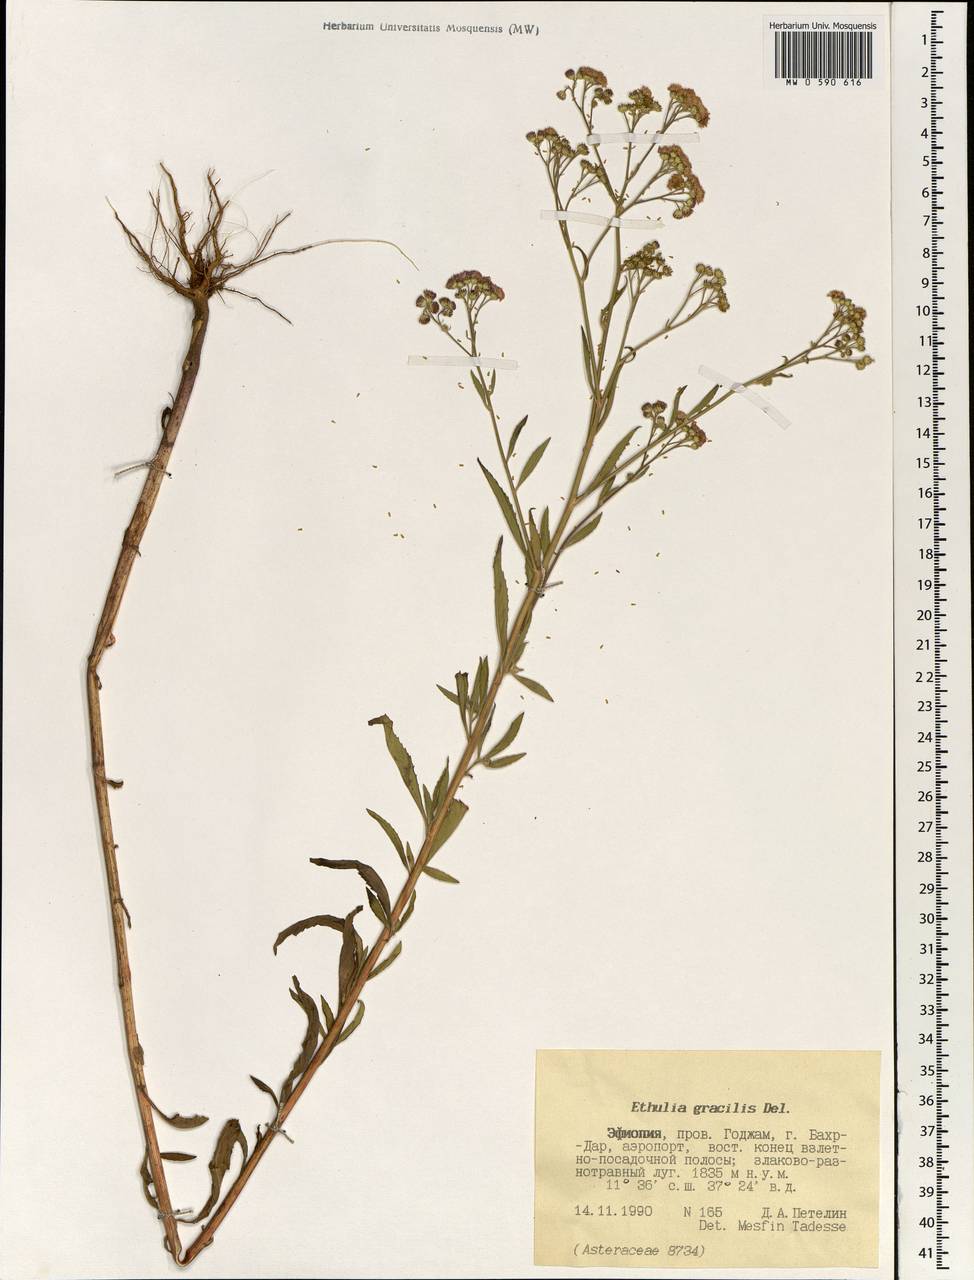 Ethulia gracilis Delile, Africa (AFR) (Ethiopia)